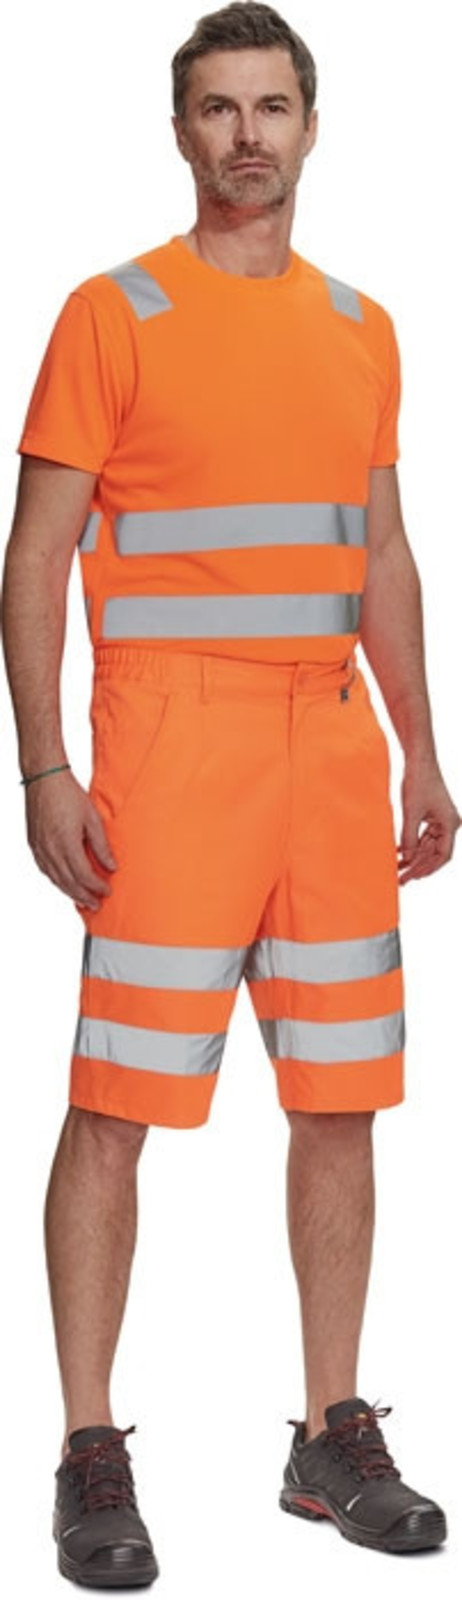 Pánske reflexné šortky Cerva Ciudades Ferrol HV - veľkosť: 46, farba: oranžová